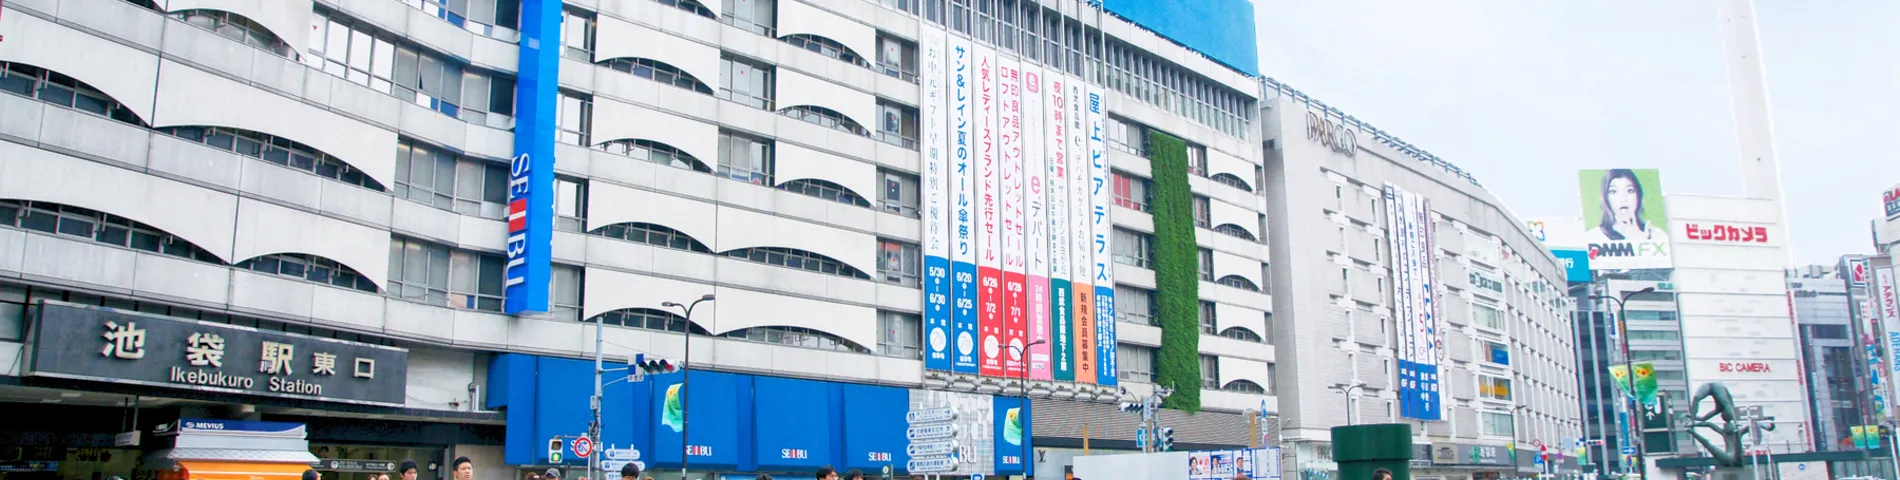 ISI Language School - Ikebukuro Campus画像1